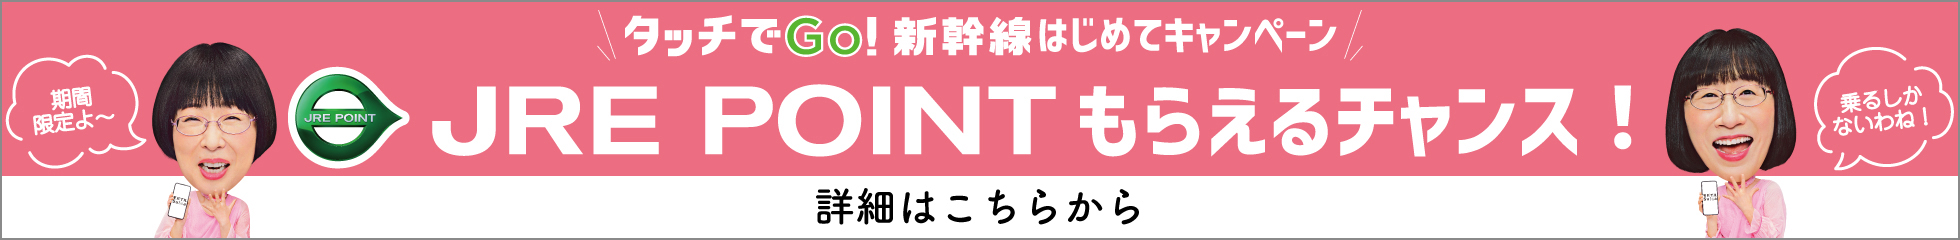 タッチでGO!新幹線はじめてキャンペーン JREPOINTもらえるチャンス! 詳細はこちらから